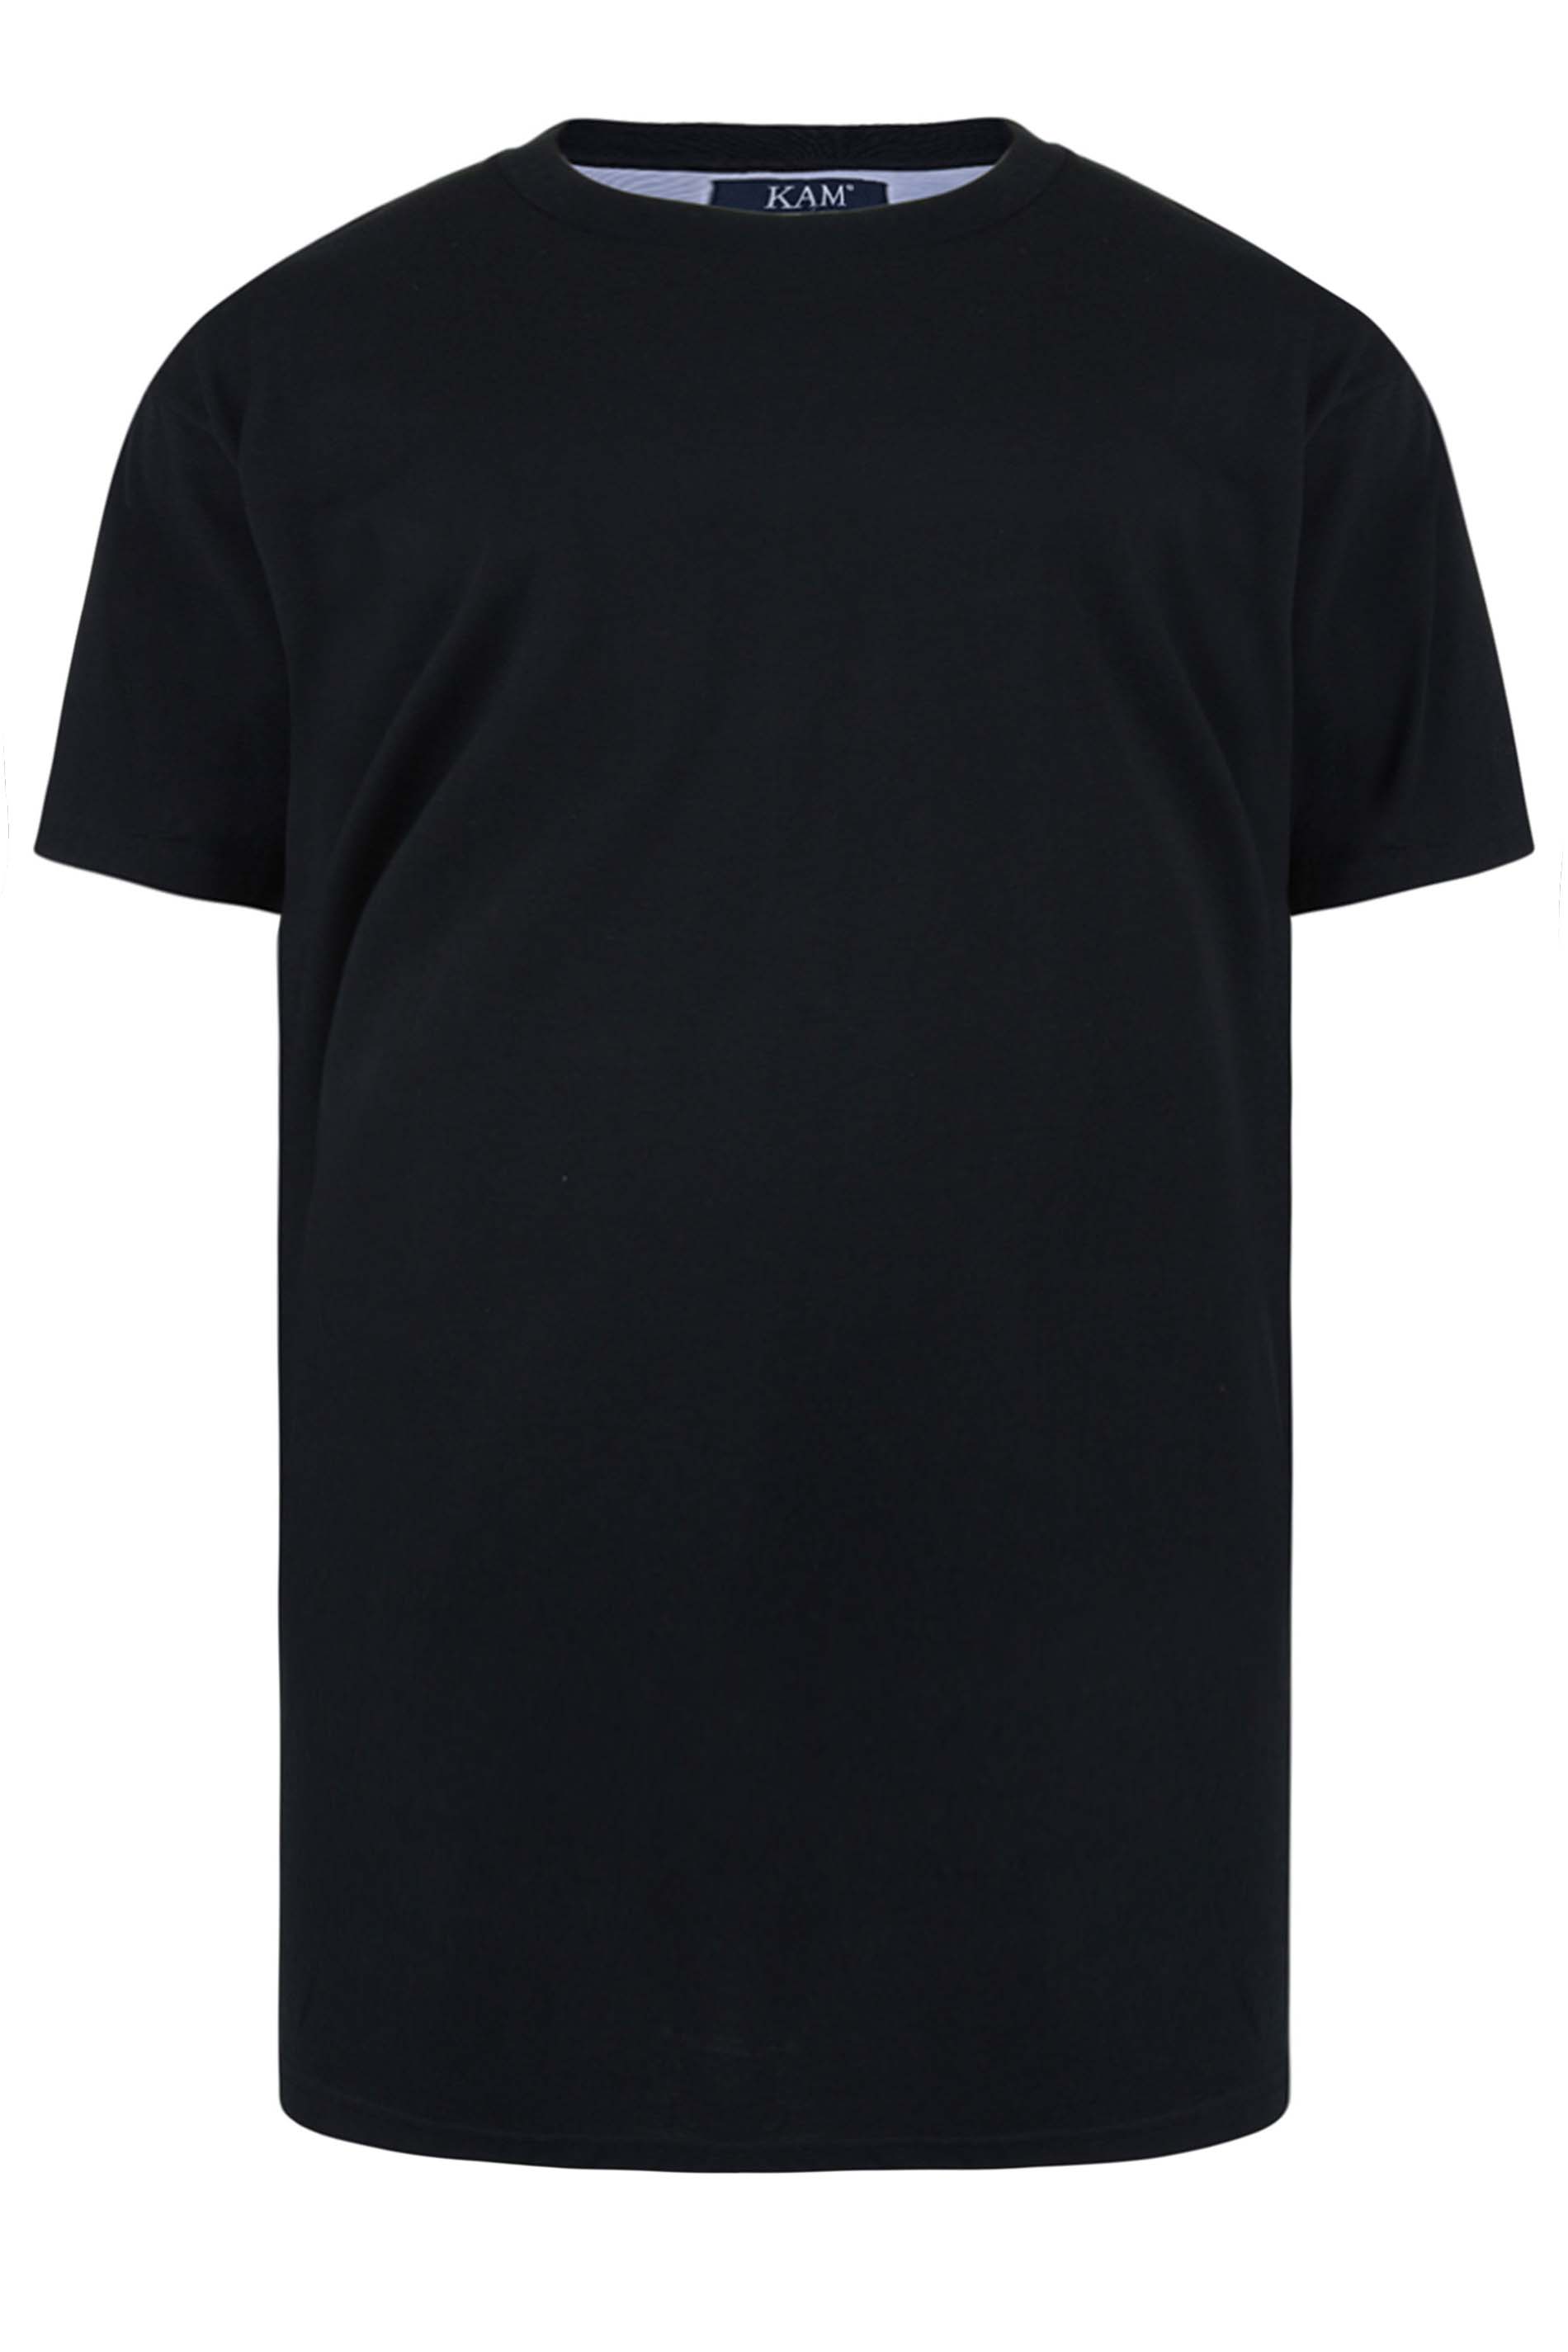 KAM Black Plain T-Shirt | BadRhino 2